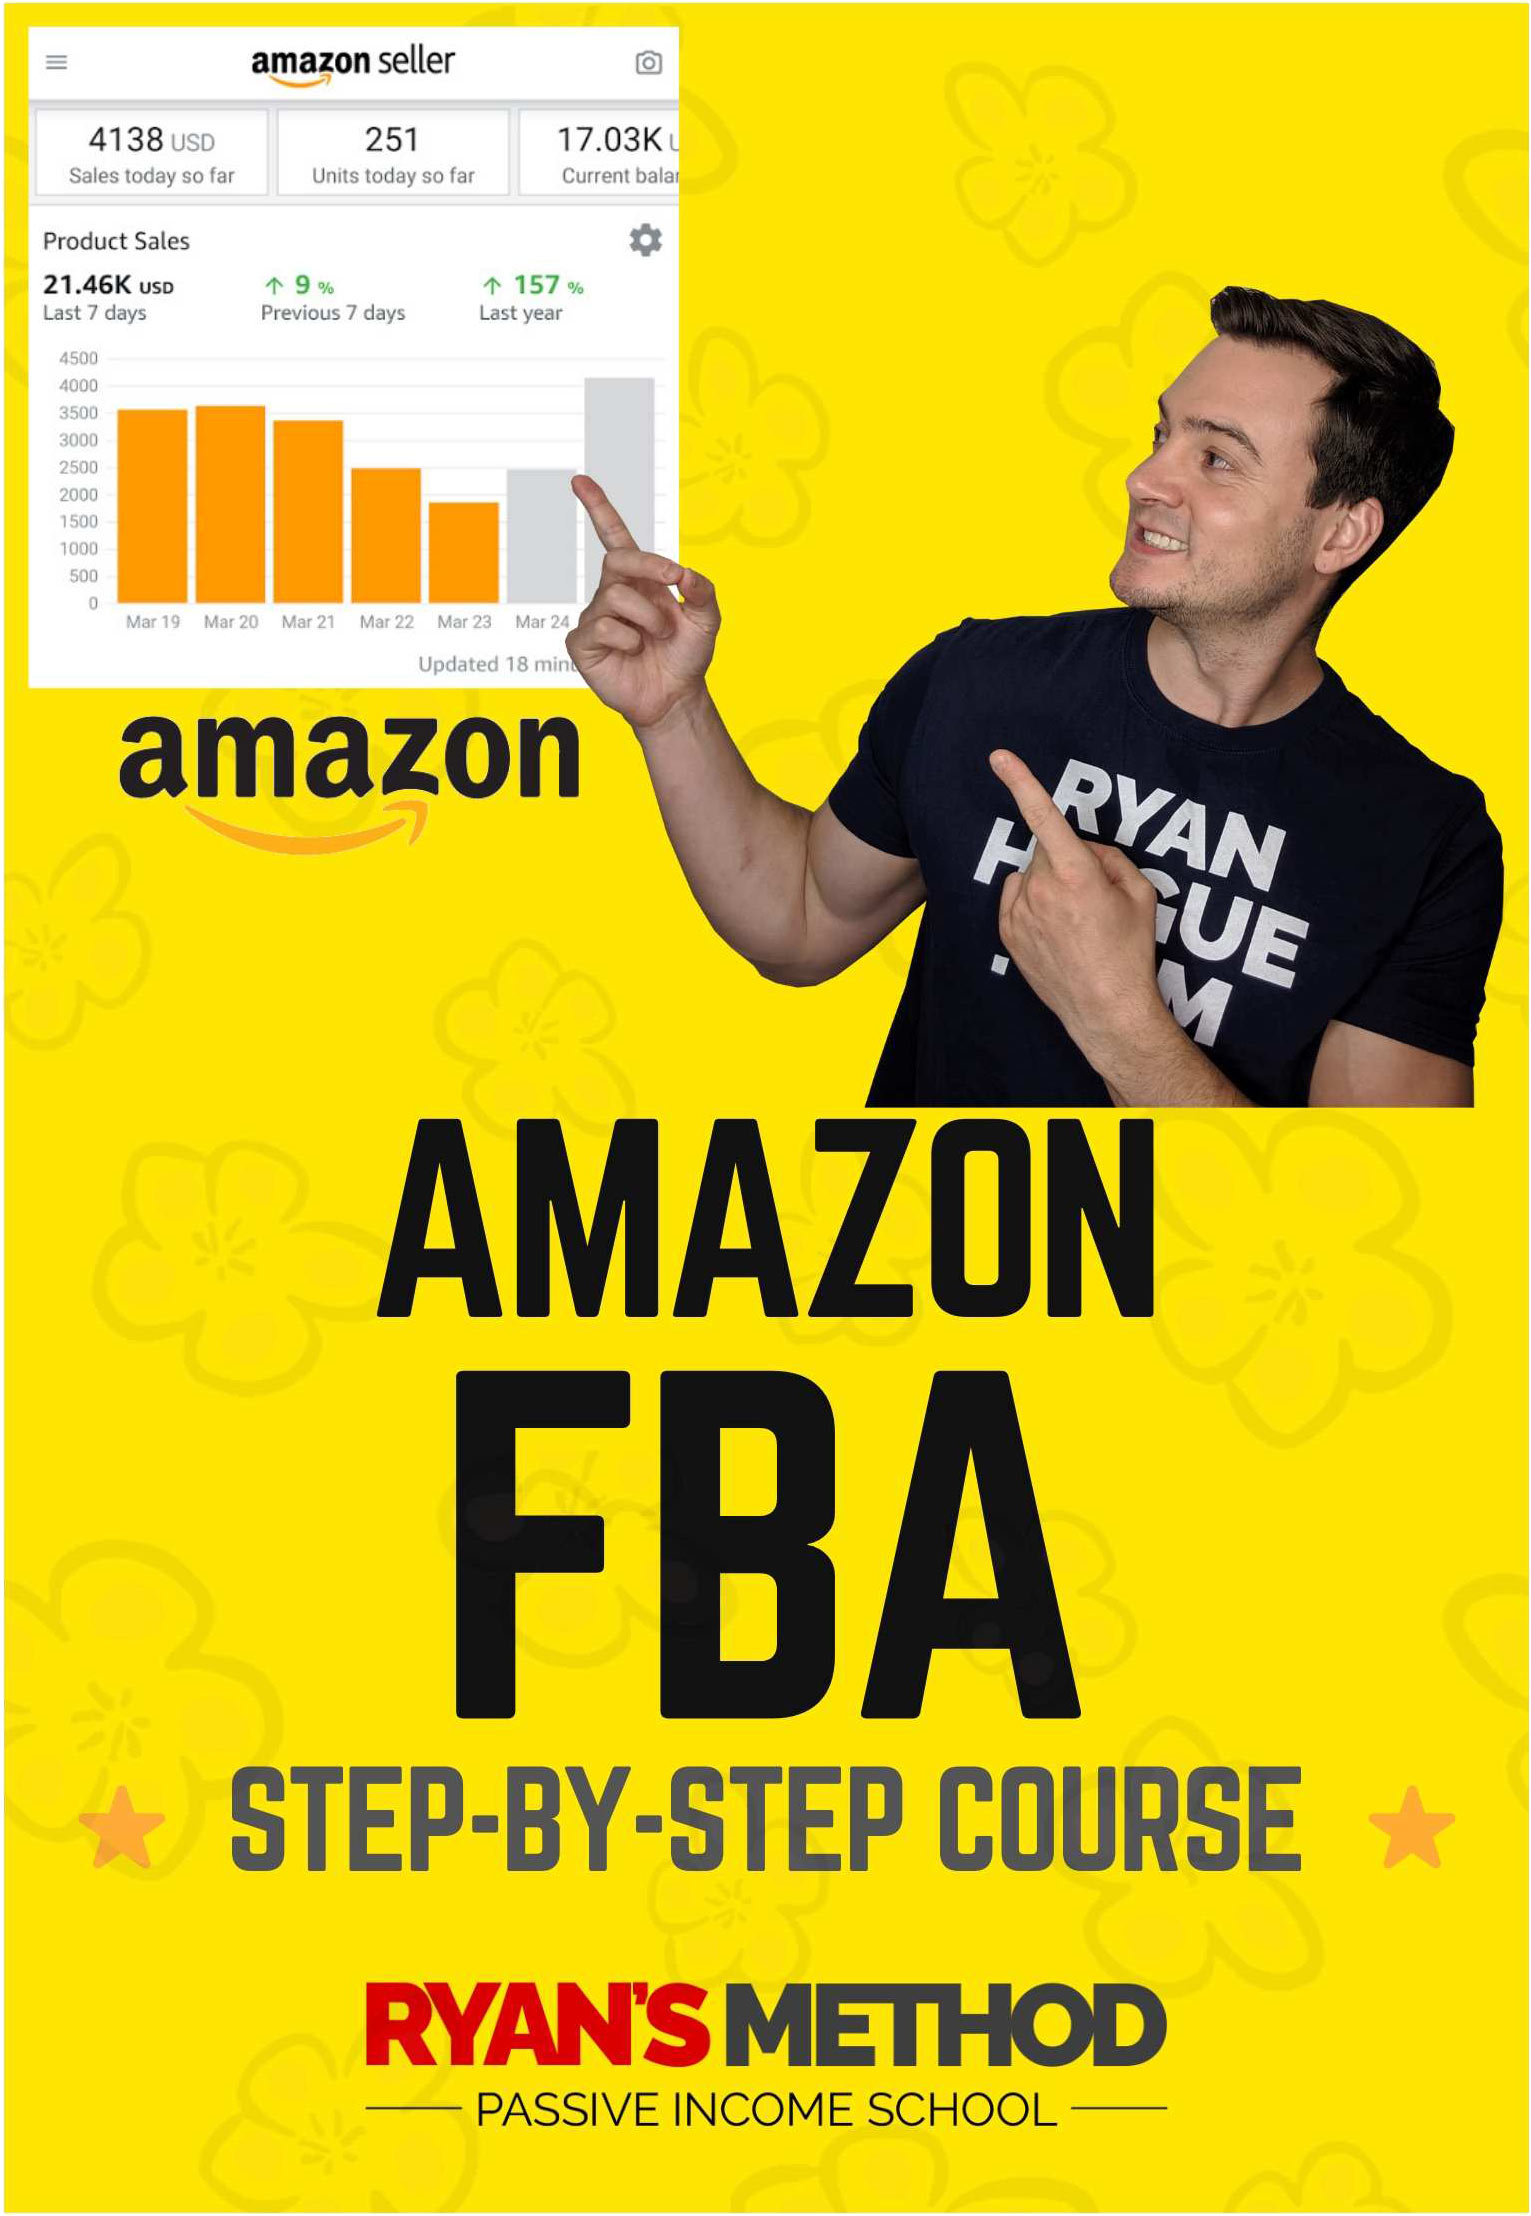 Ryan's Method: Amazon FBA Course